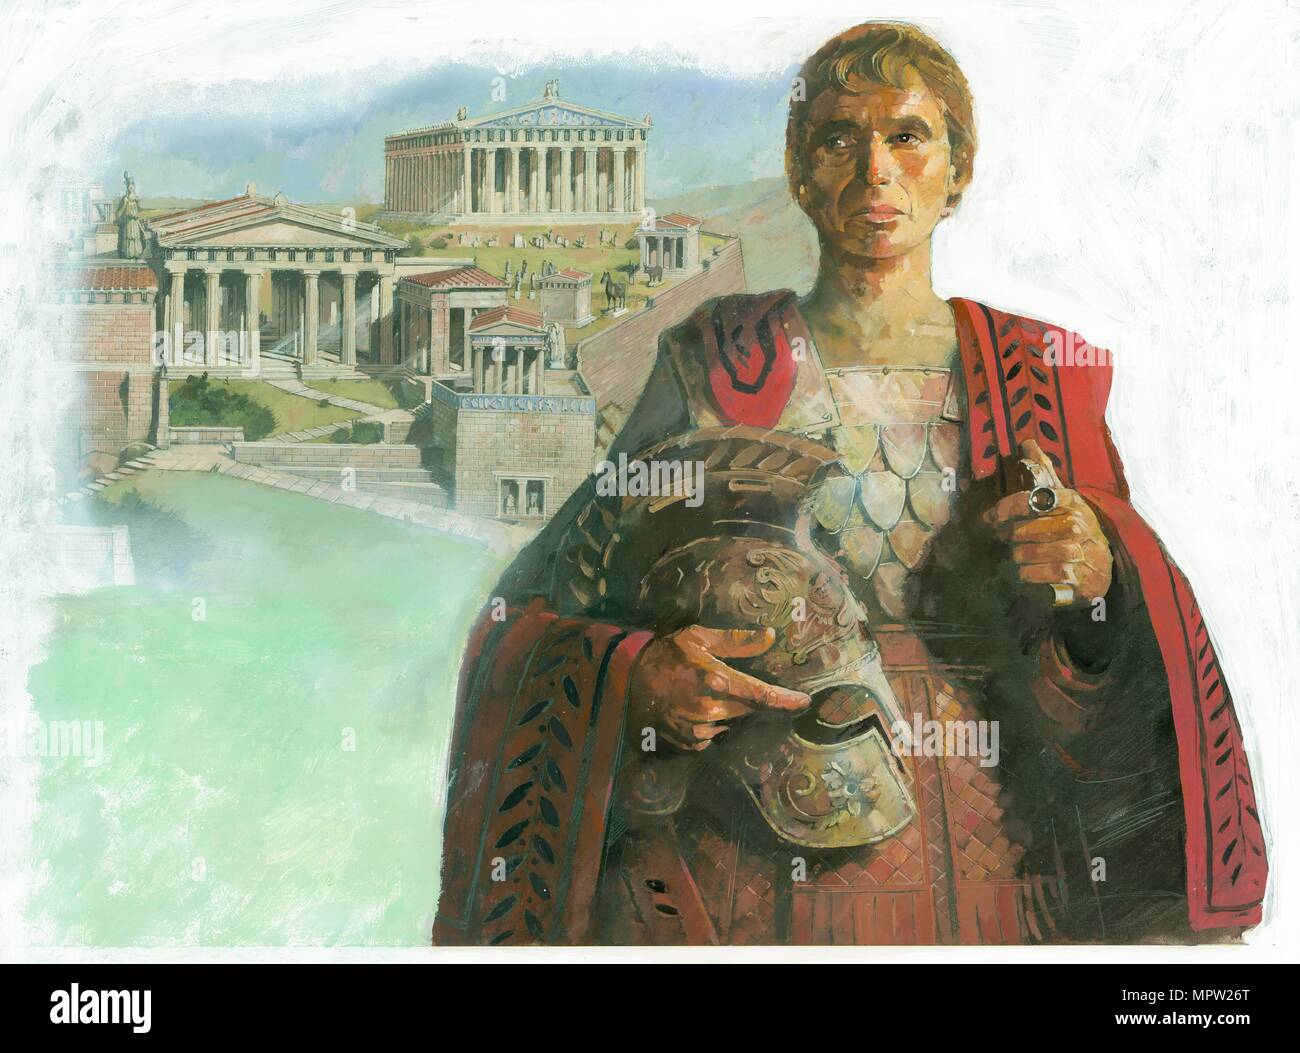 Guerrier grec antique et/ou homme d'État, des années 90. Artiste : Ivan hdb. Banque D'Images